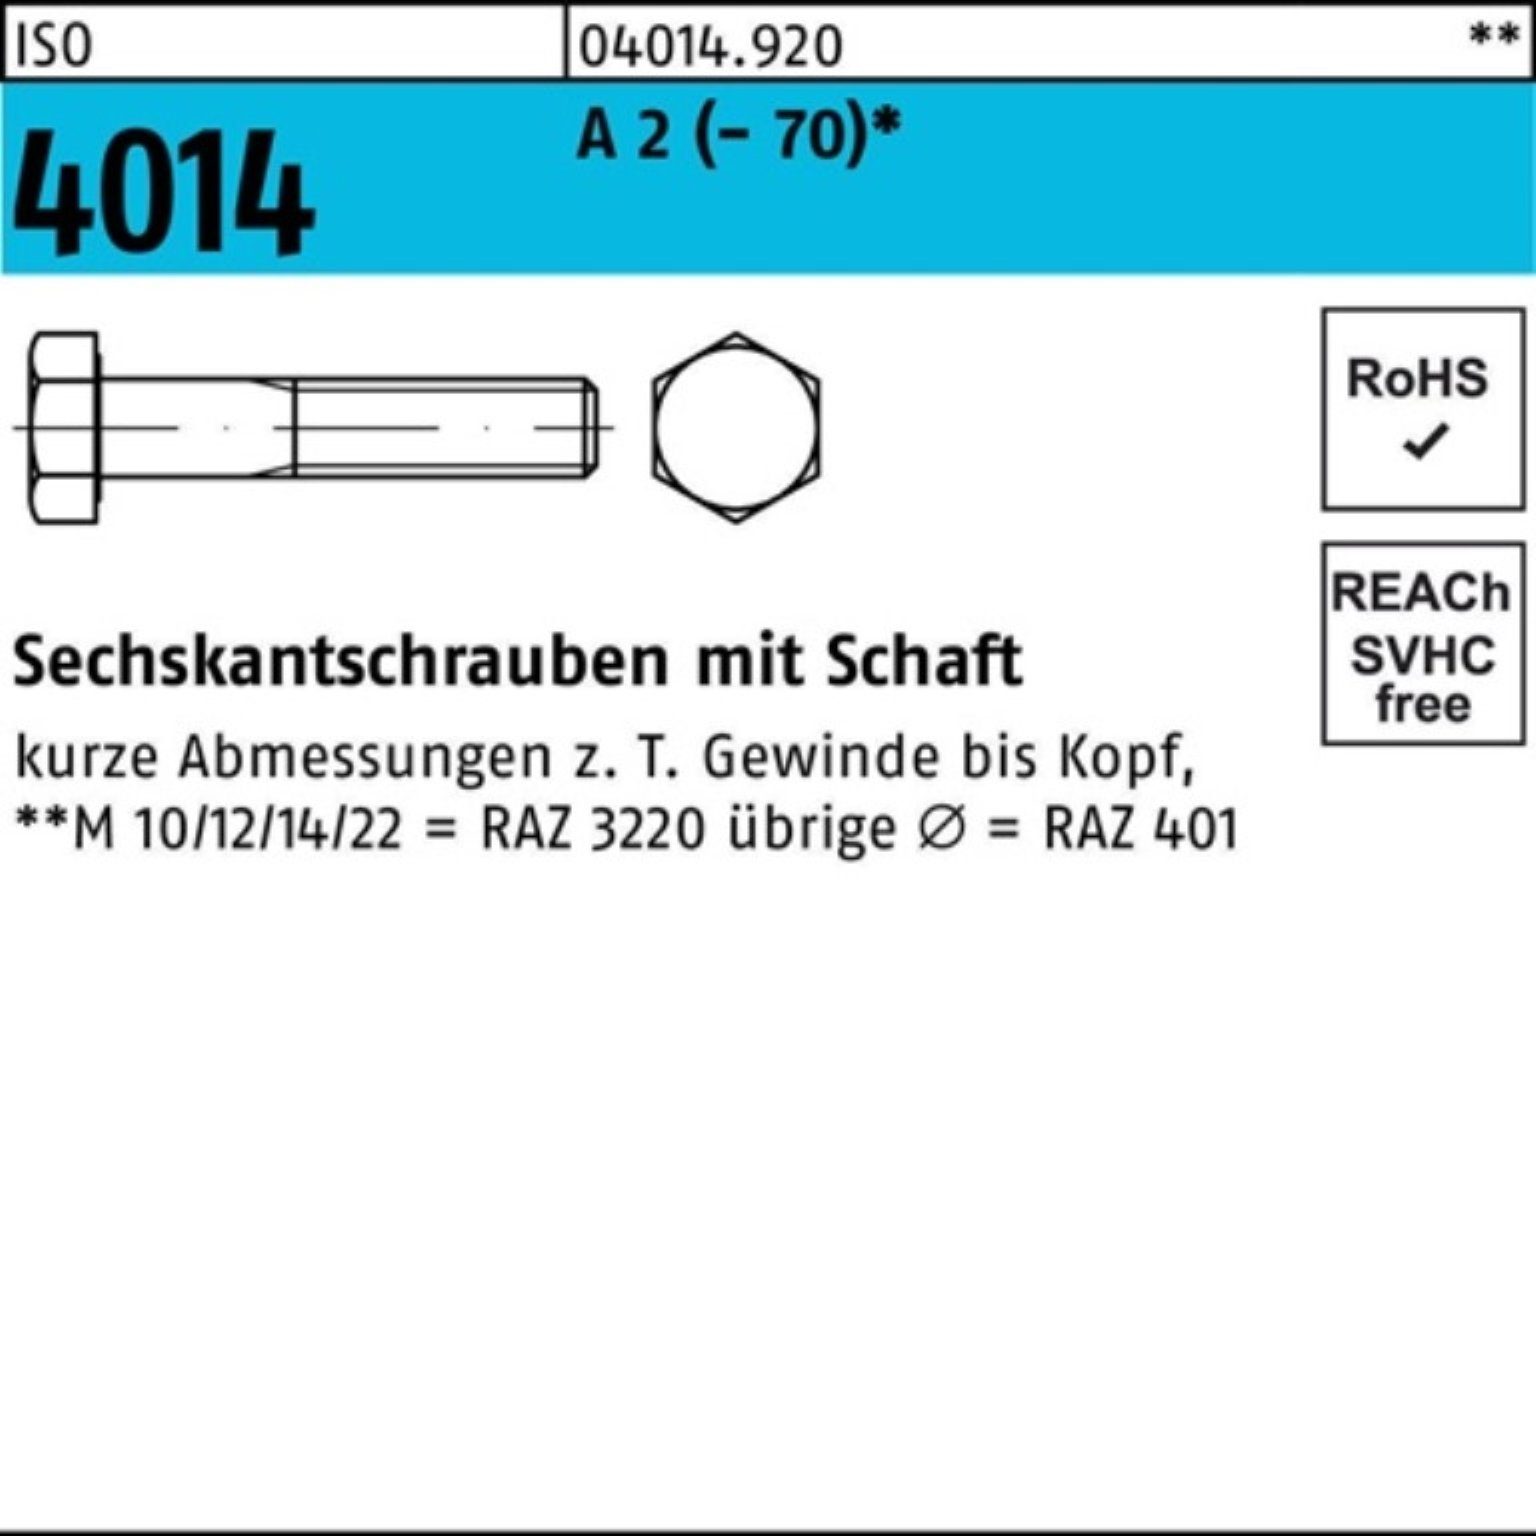 Pack Sechskantschraube 100er (70) 4014 Sechskantschraube M10x 2 50 Schaft A St 100 Bufab ISO